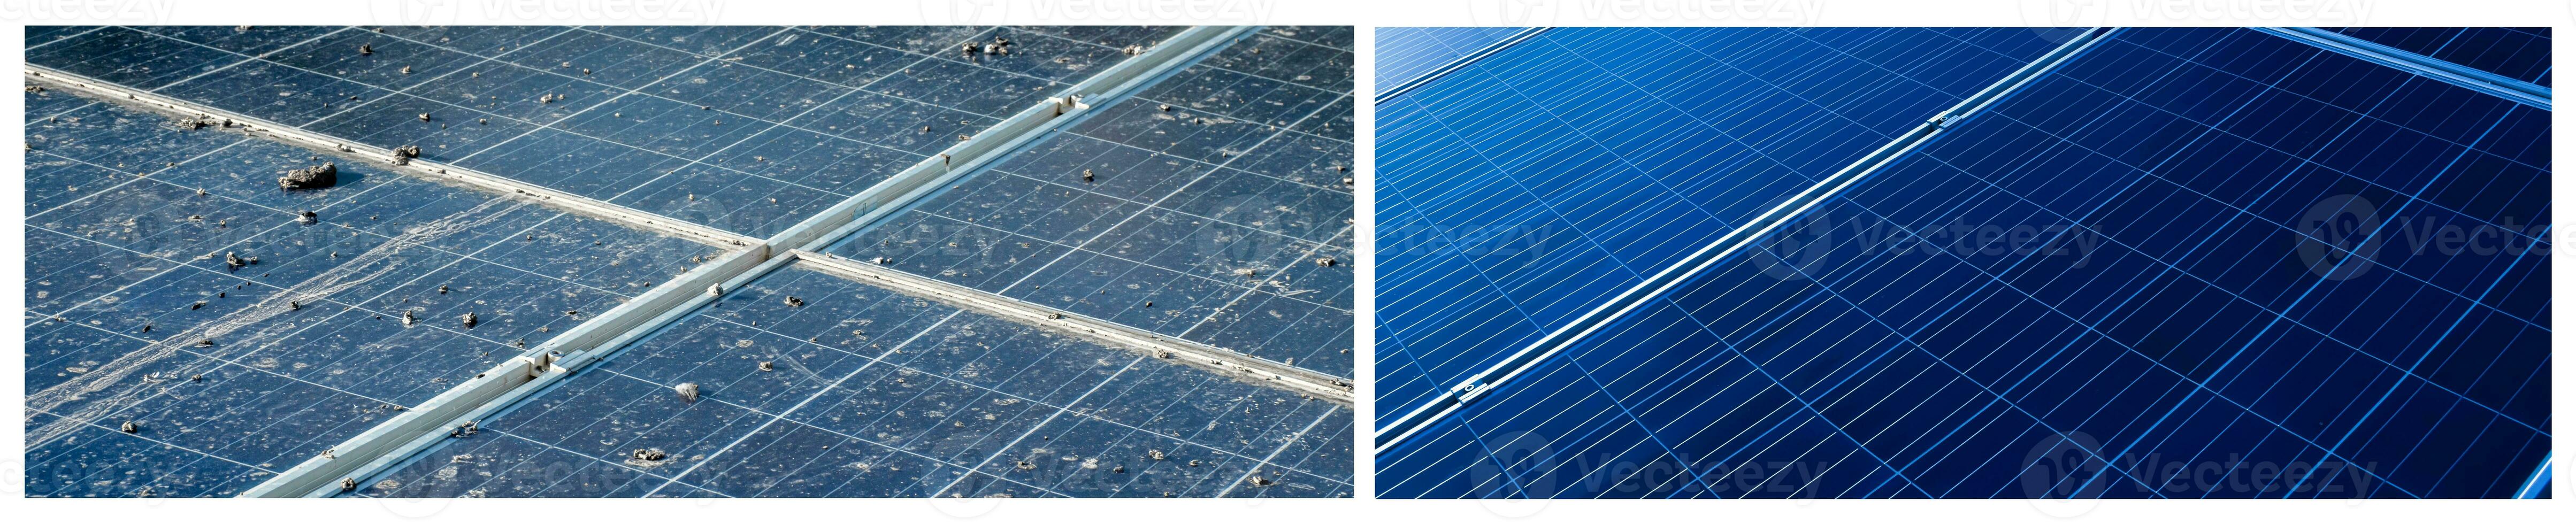 Oberer, höher Oberfläche von Photovoltaik oder Solarzelle Tafeln, schmutzig Paneele und sauber Paneele nach Waschen, abgeschnitten Schuss, Konzept zum Waschen und Reinigung zum das Effizienz von Arbeiten System von Solar- Zellen. foto